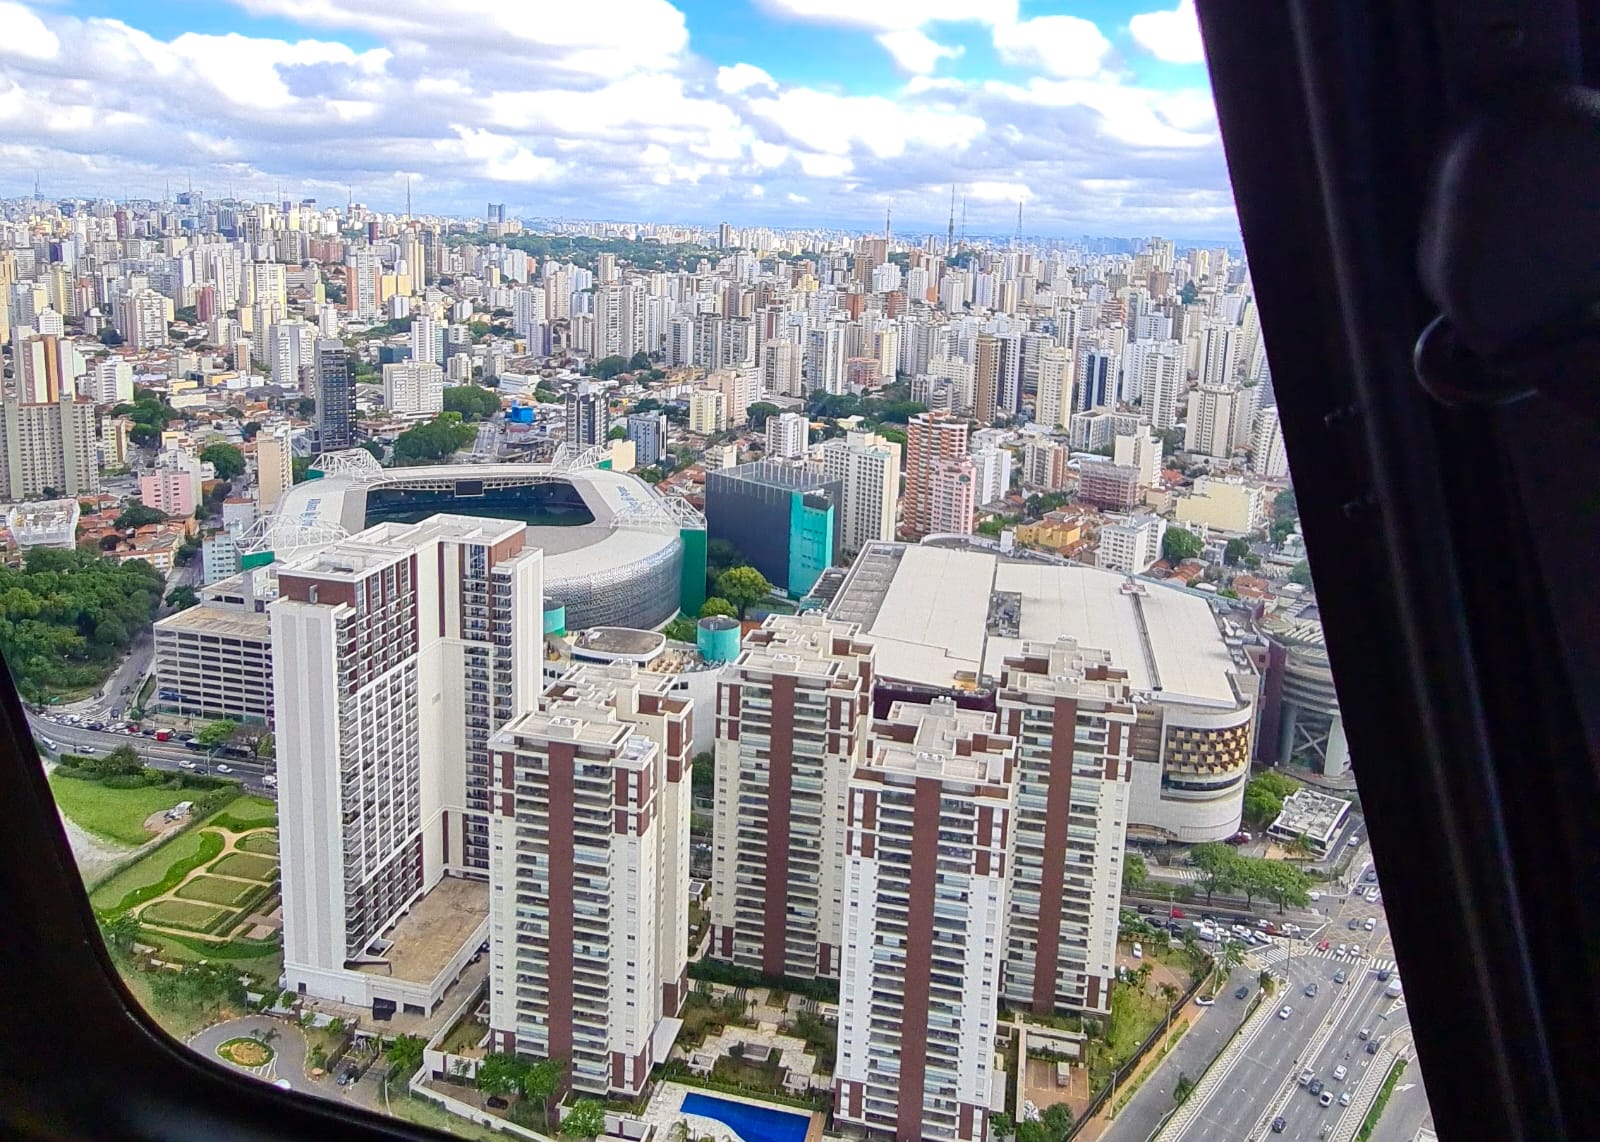 Passeio de Helicóptero em São Paulo - Pacote Top Esquilo